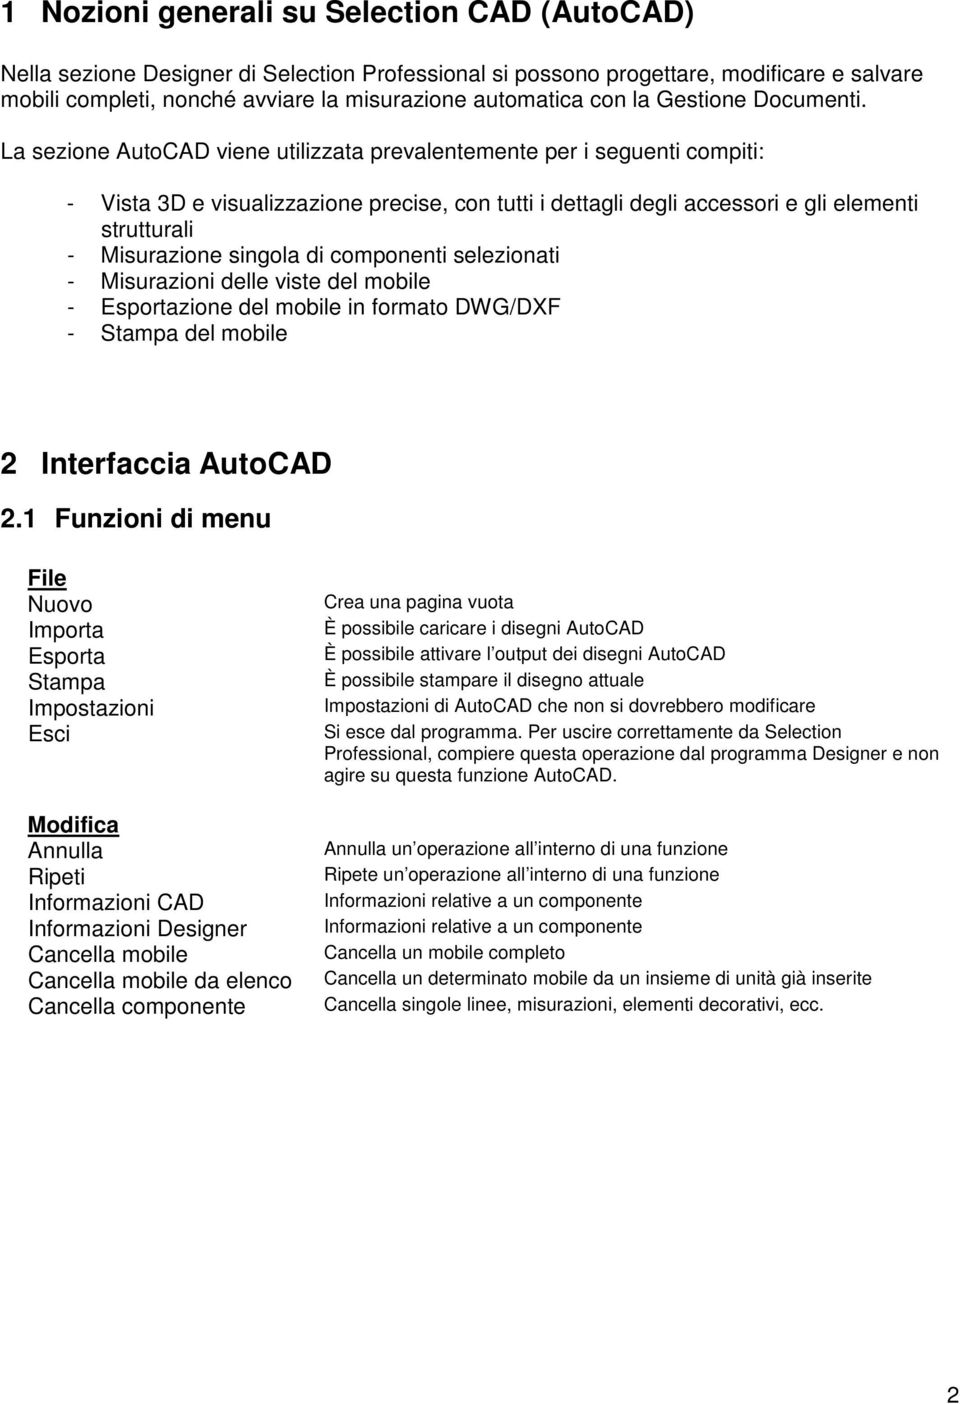 La sezione AutoCAD viene utilizzata prevalentemente per i seguenti compiti: - Vista 3D e visualizzazione precise, con tutti i dettagli degli accessori e gli elementi strutturali - Misurazione singola